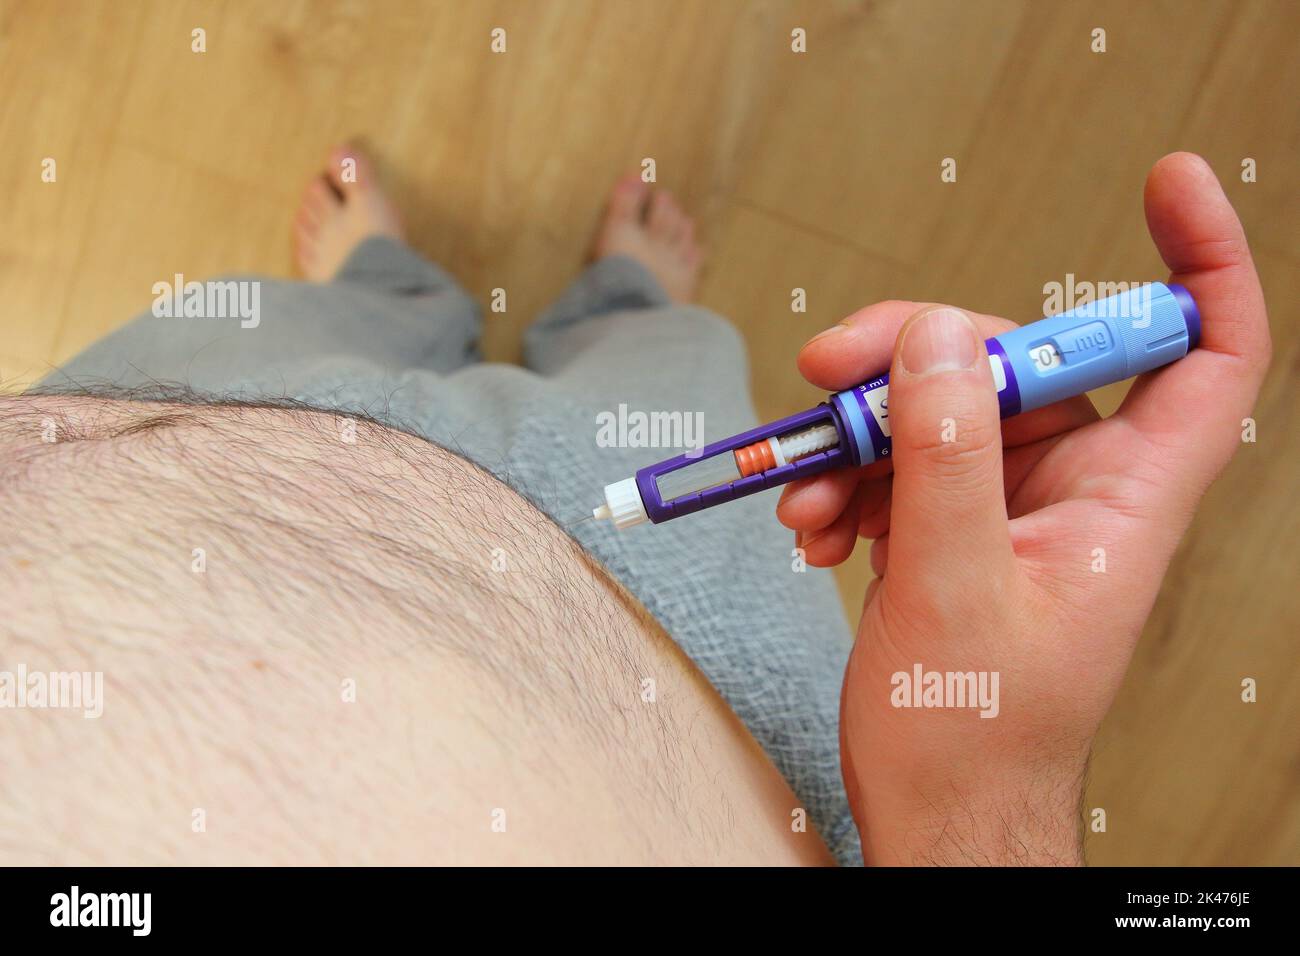 Homme en surpoids appliquant une injection de médicaments contre le diabète (seringue) dans son estomac, son ventre Banque D'Images